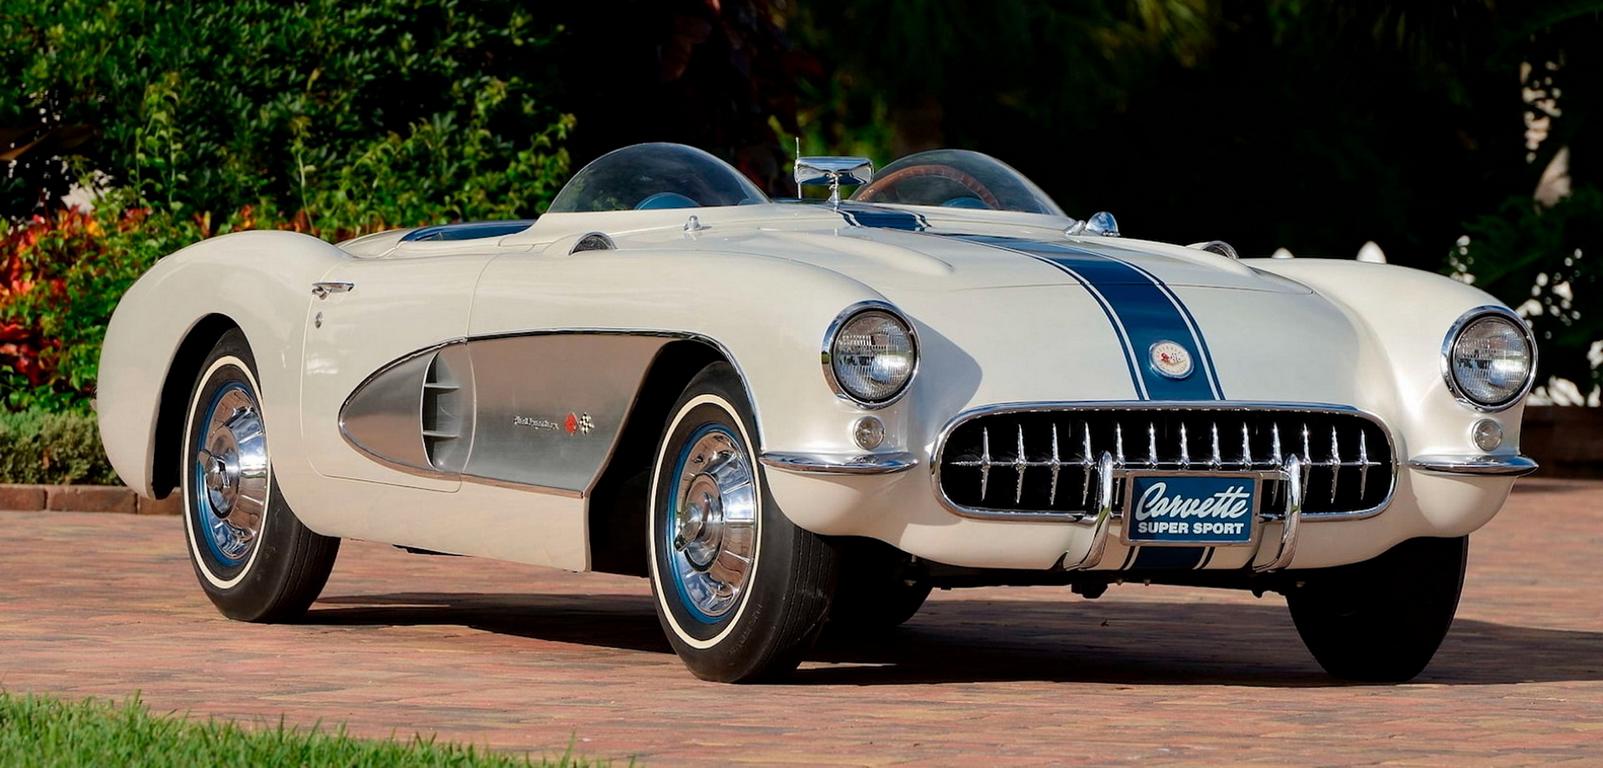 1957er Corvette Super Sport Concept Header 1957er Corvette Super Sport Concept sucht neuen Besitzer!